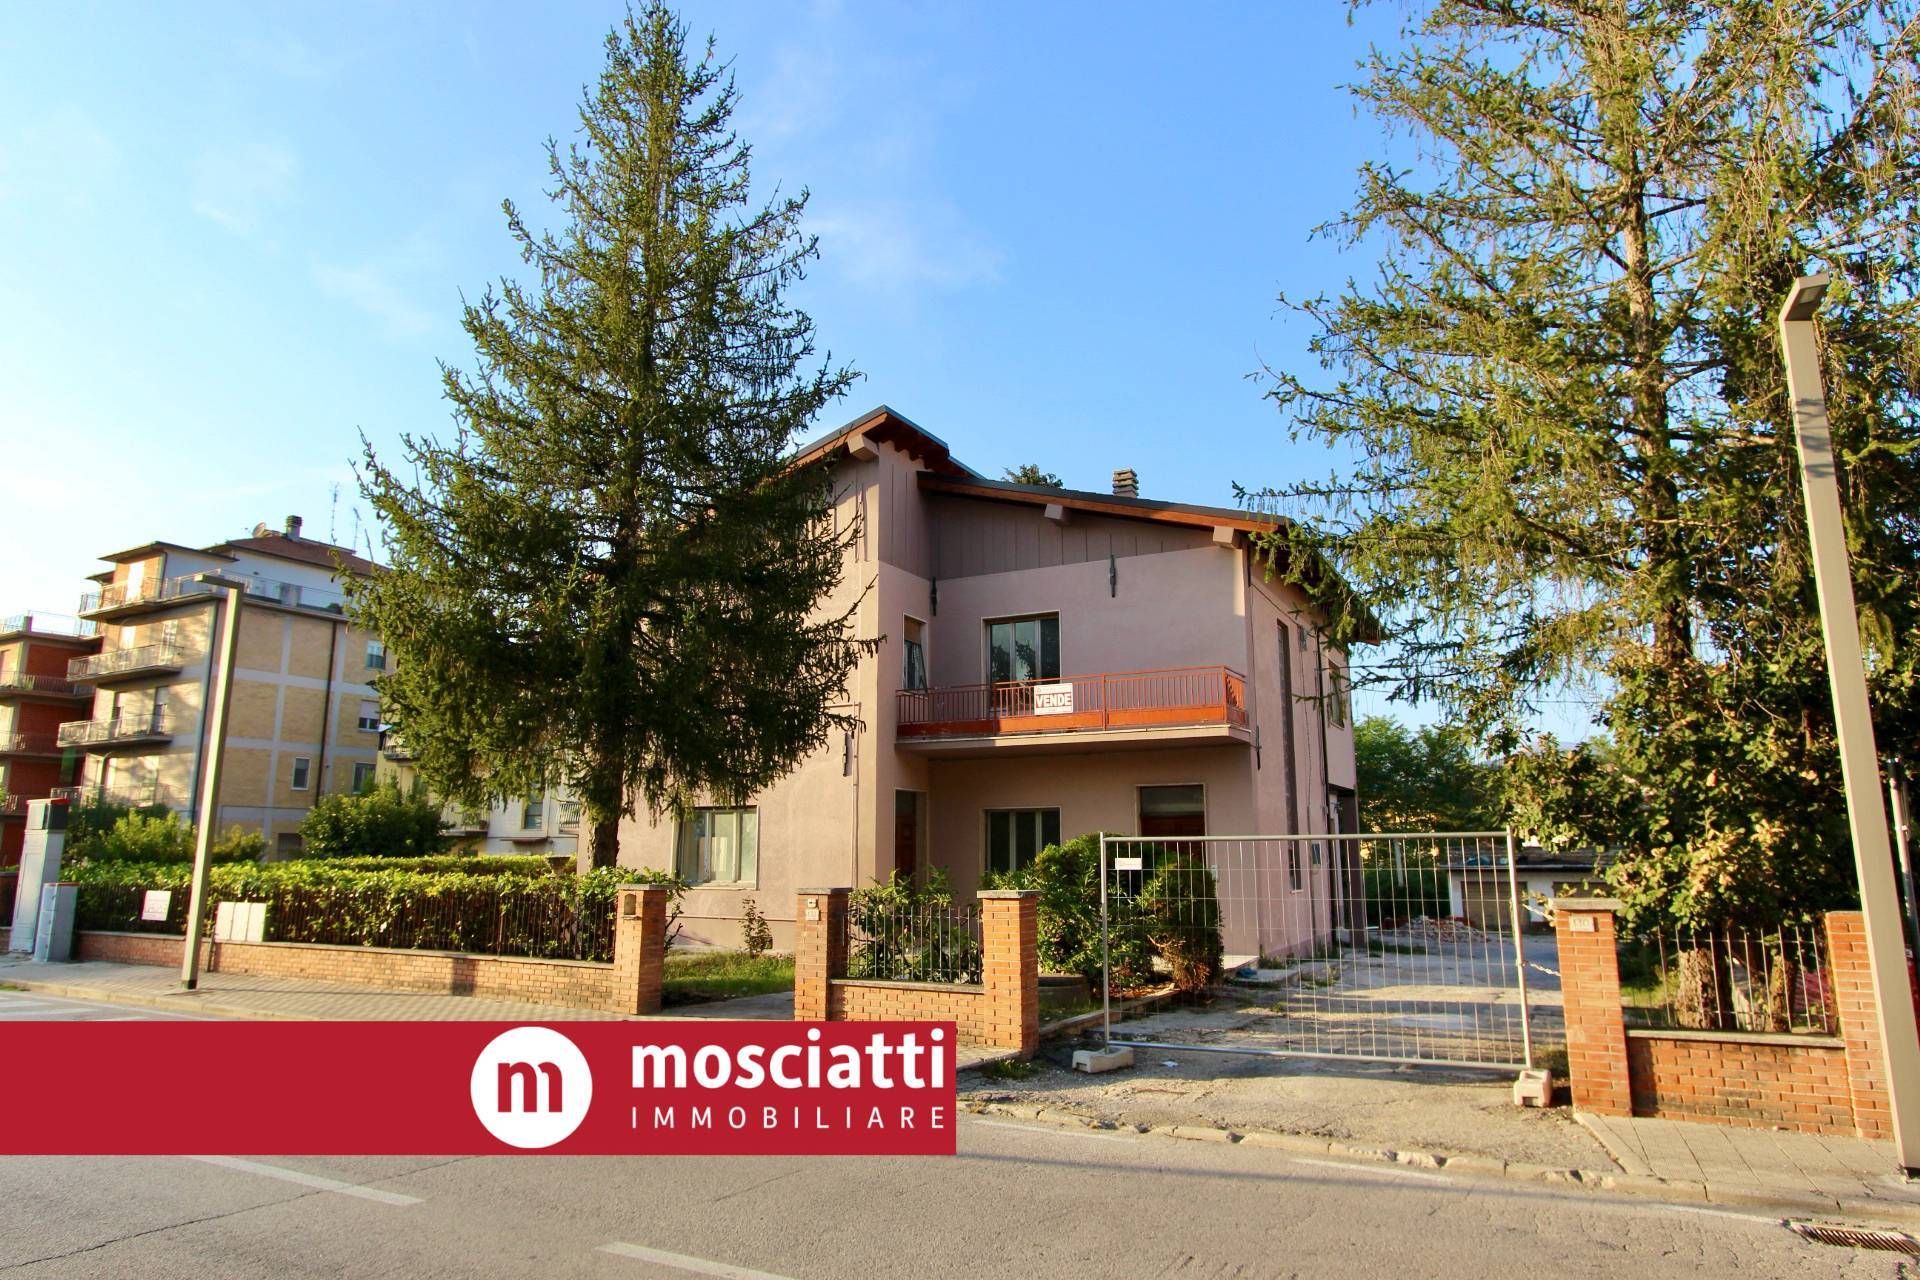 Appartamento in vendita a Castelraimondo, 4 locali, prezzo € 105.000 | PortaleAgenzieImmobiliari.it